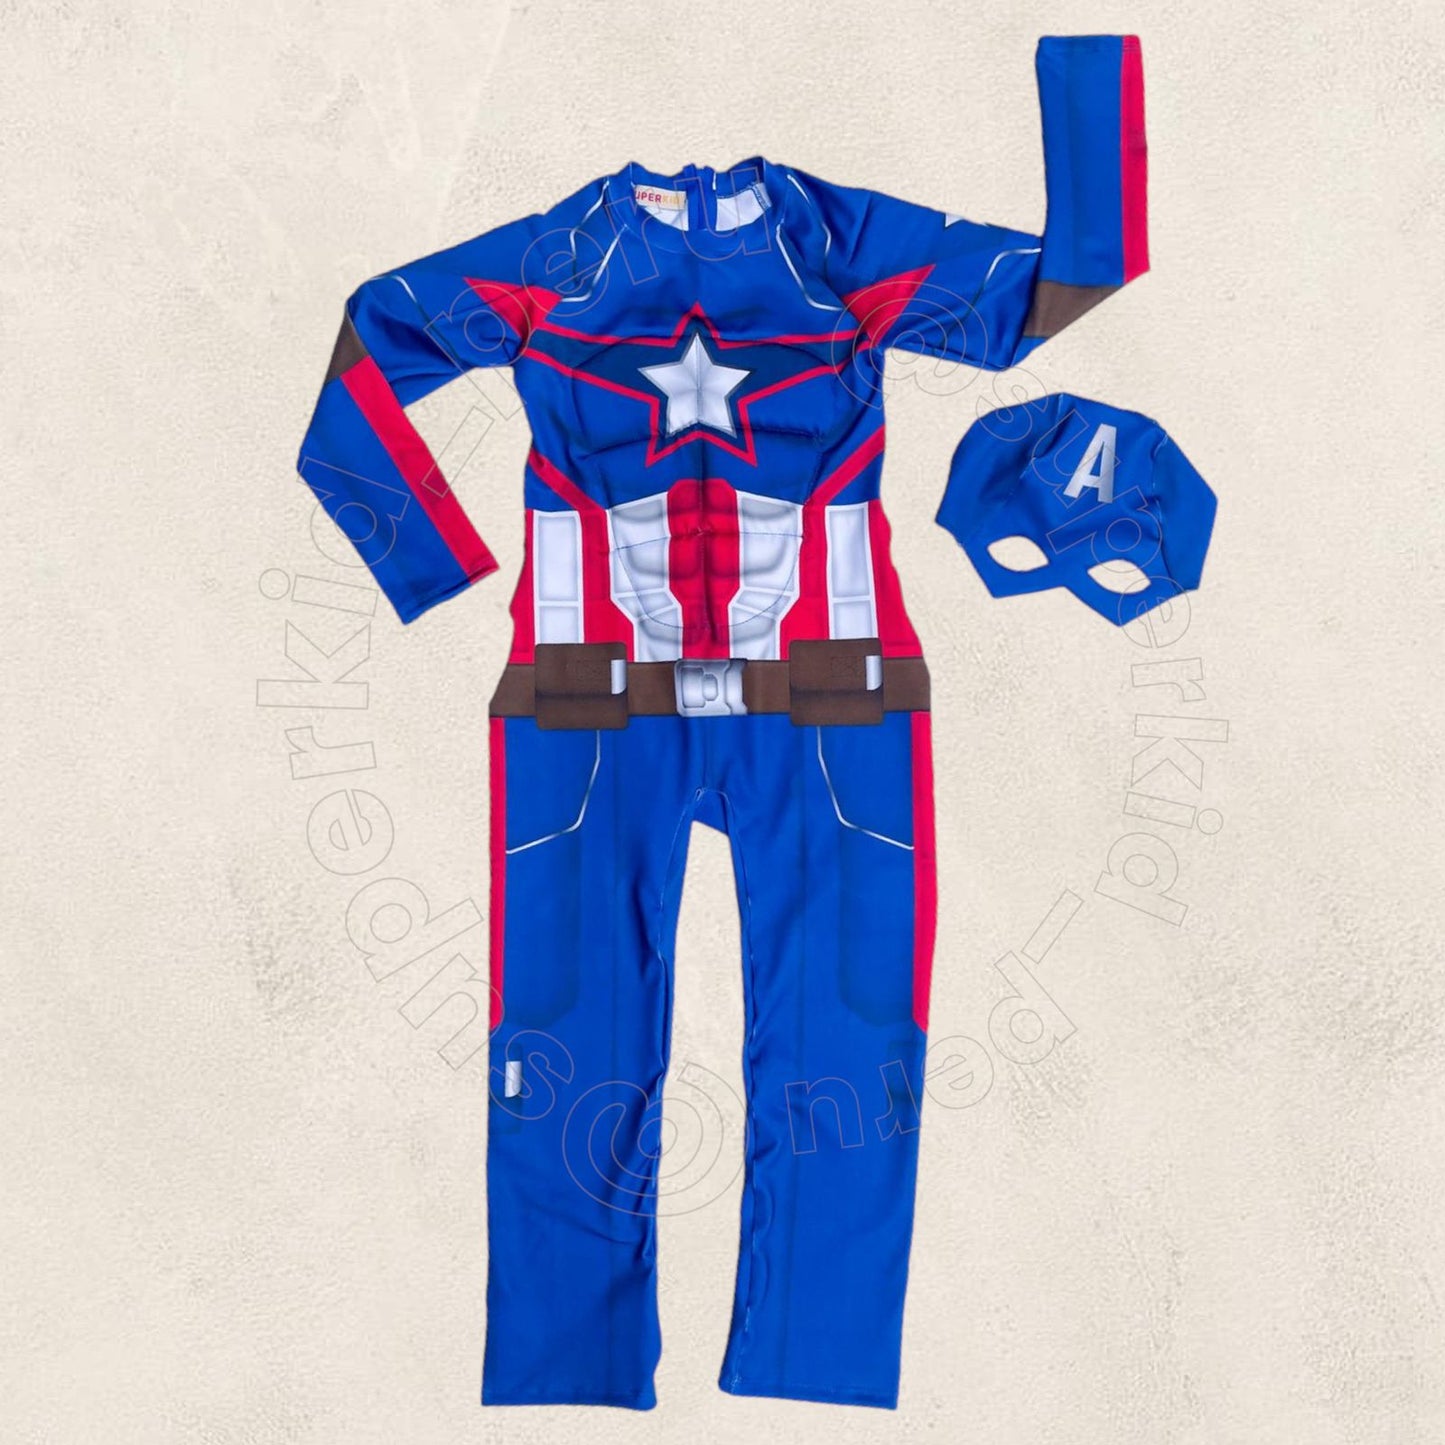 Disfraz Capitán América